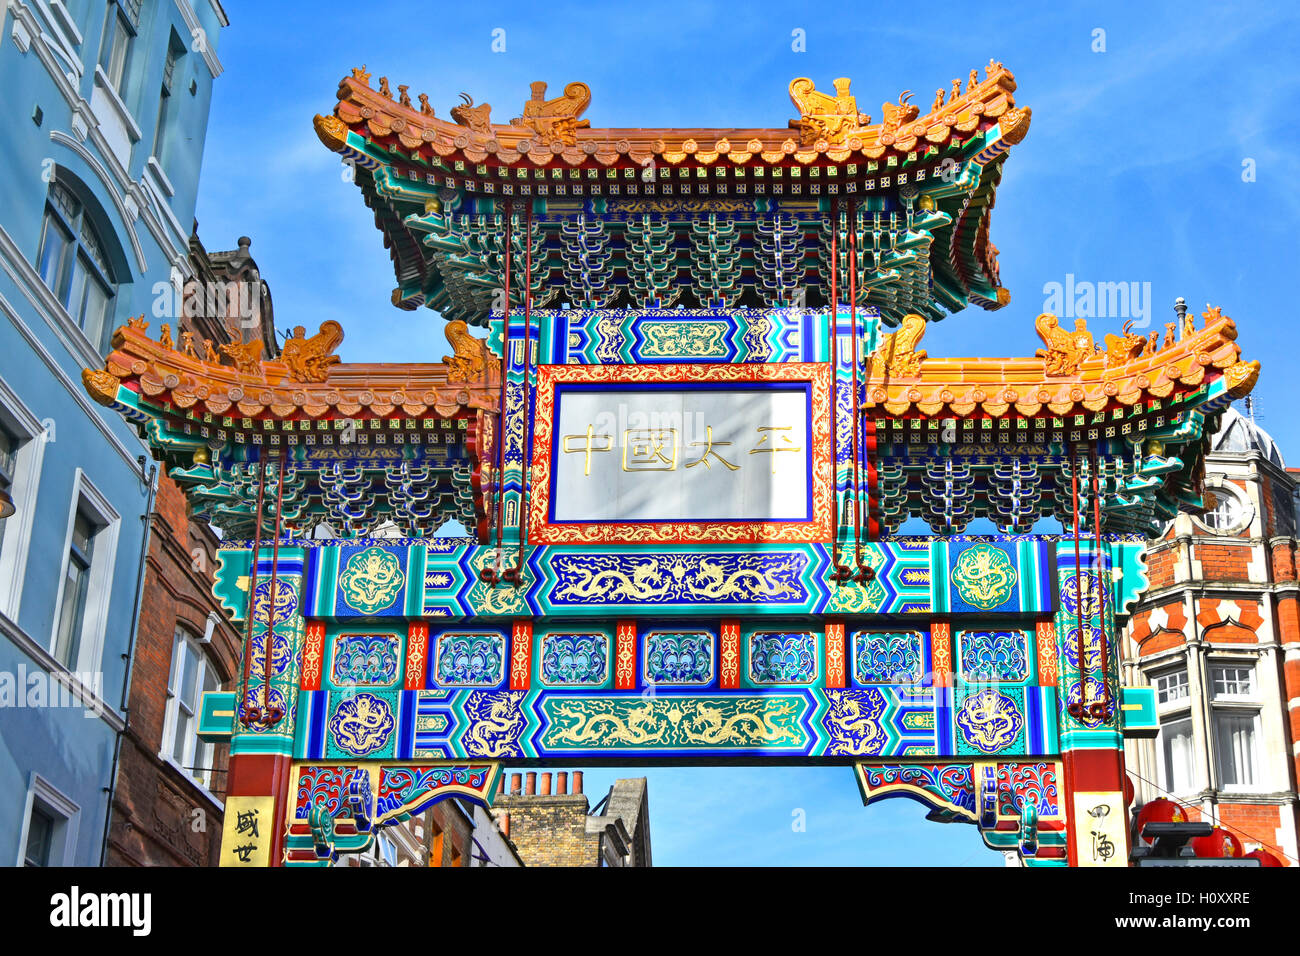 Chinatown décorations chinoises colorées sur le dessus de la porte, à travers le garde-robe Rue marquant l'entrée principale de la communauté de la ville de Chine West End Londres Angleterre Royaume-Uni Banque D'Images